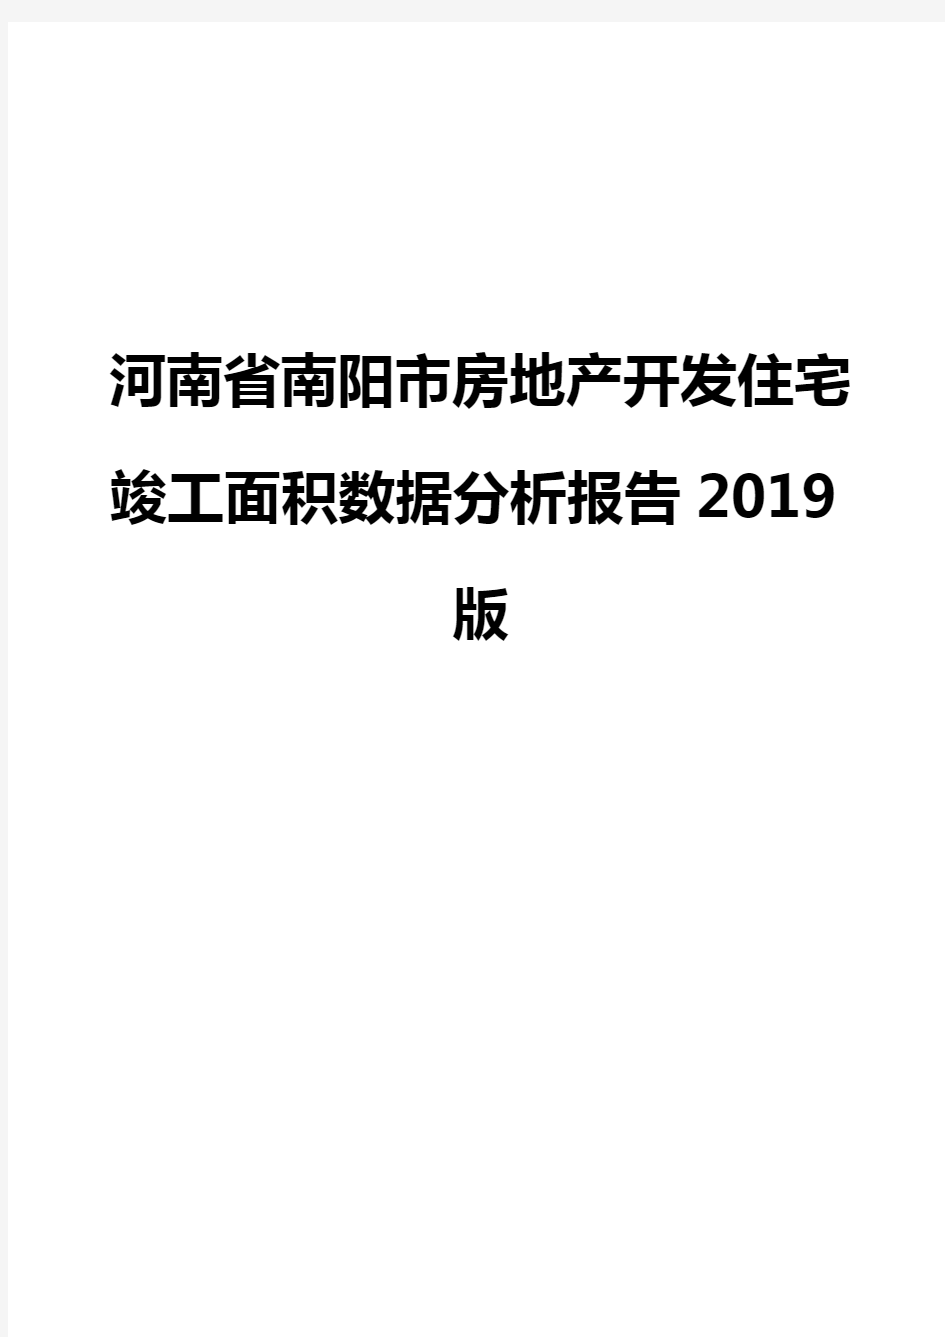 河南省南阳市房地产开发住宅竣工面积数据分析报告2019版